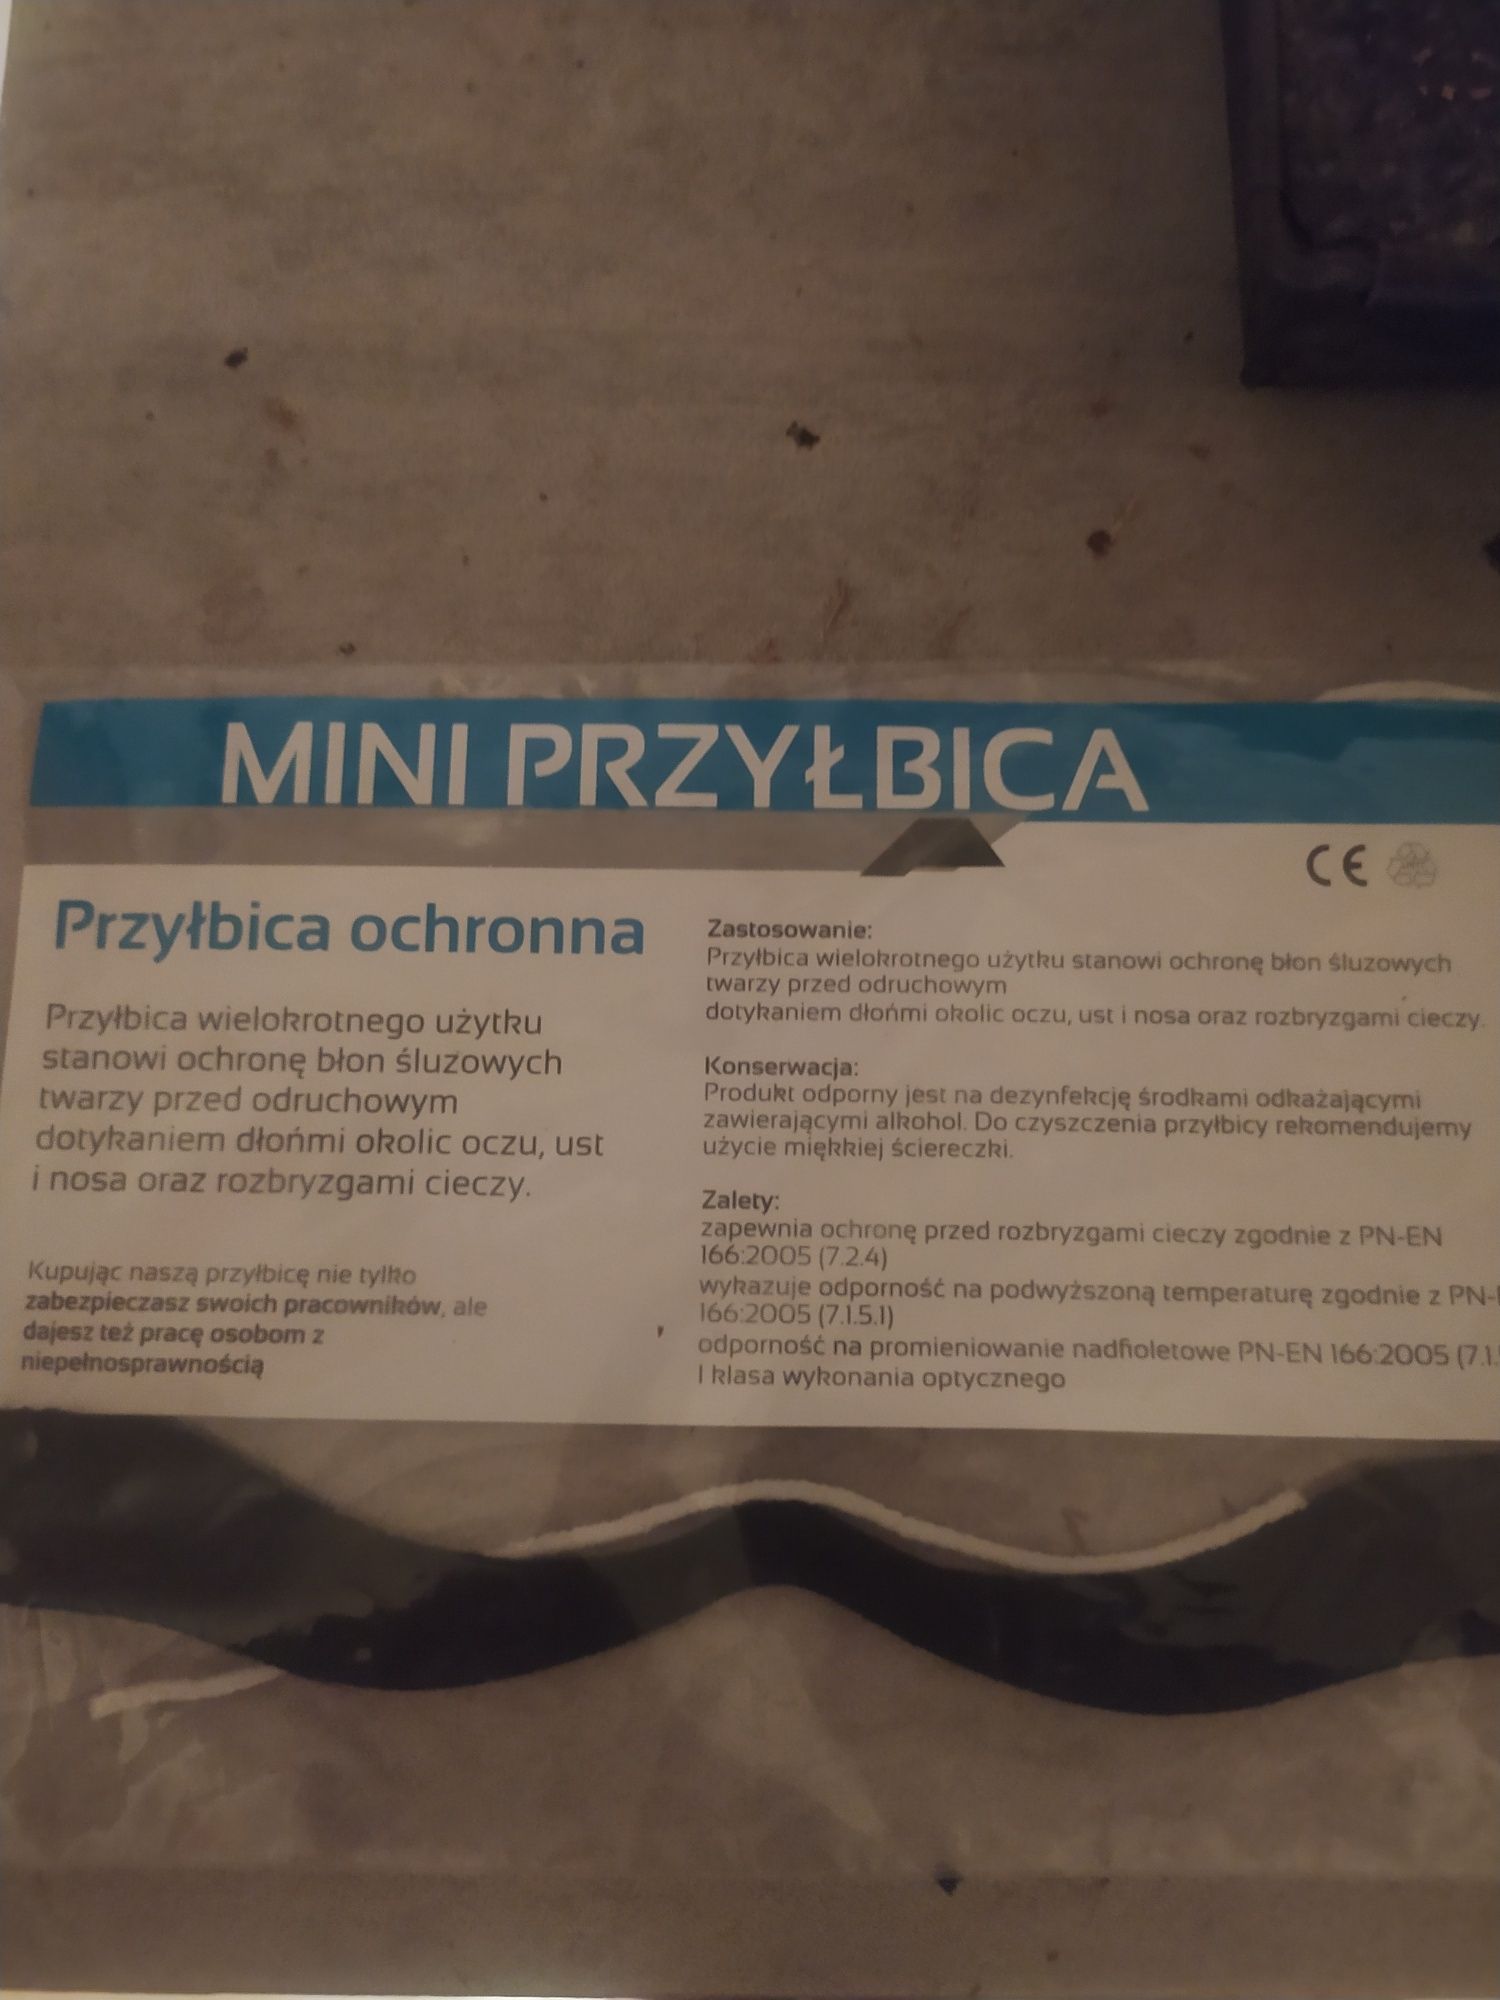 Mini przyłbica Polski produkt